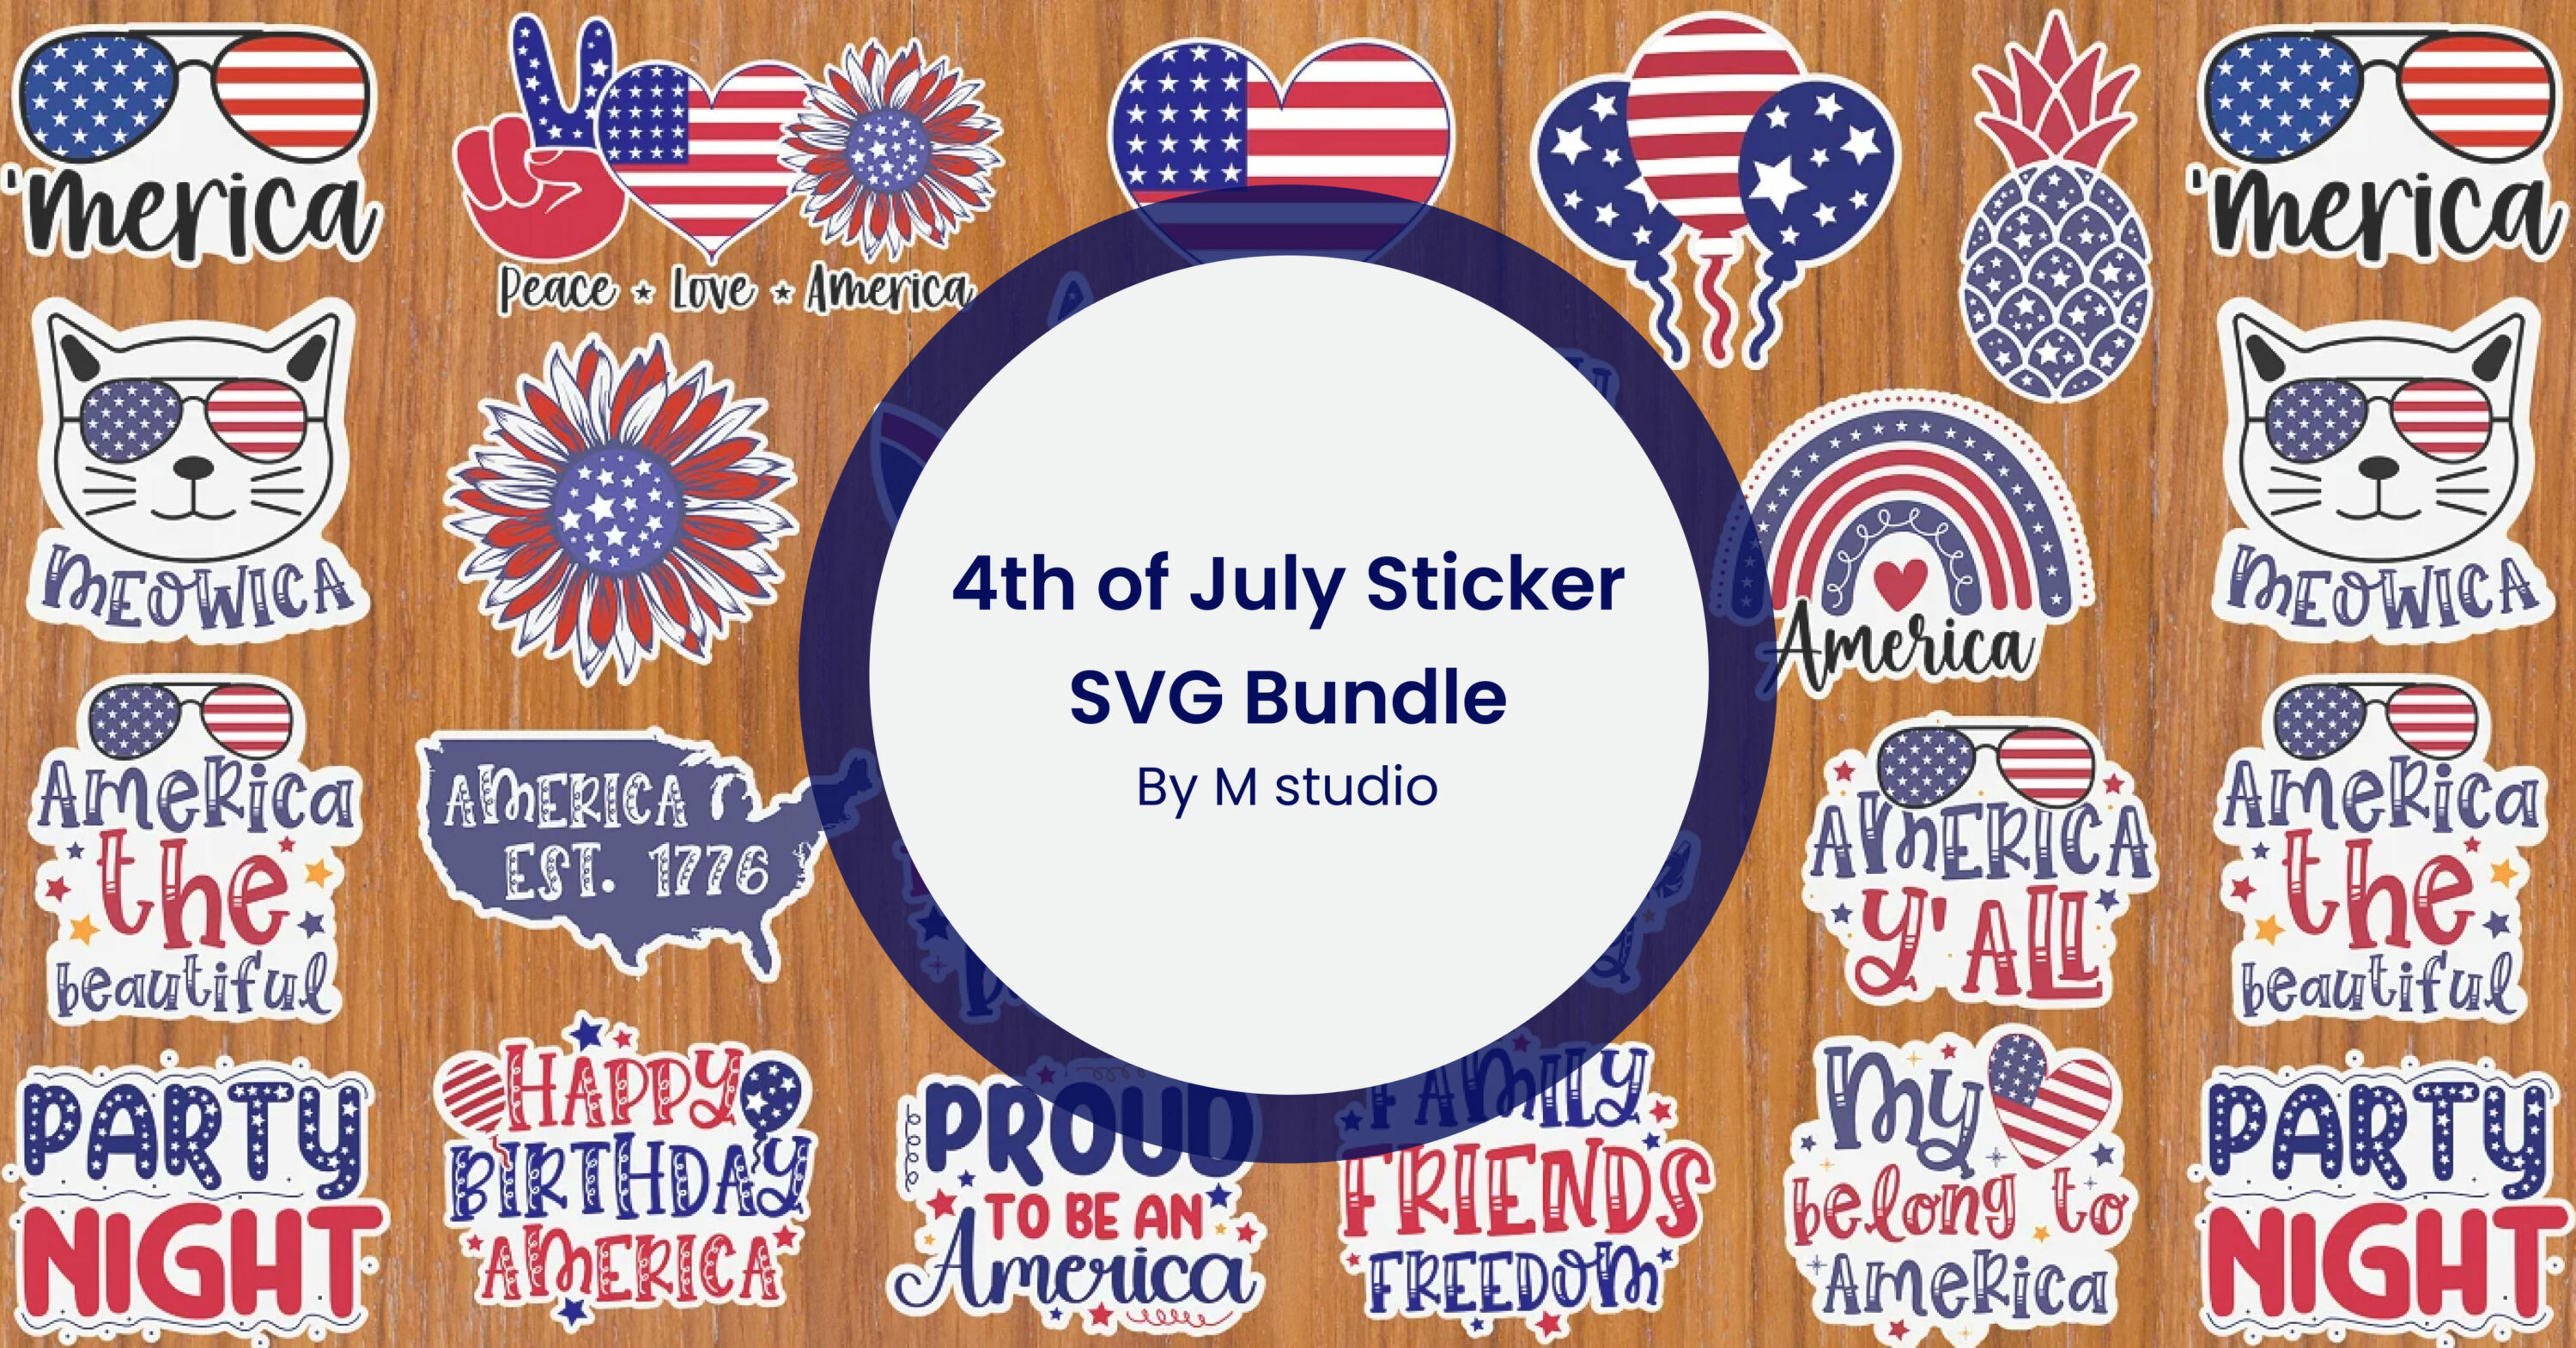 4th of July Sticker SVG Bundle facebook image.